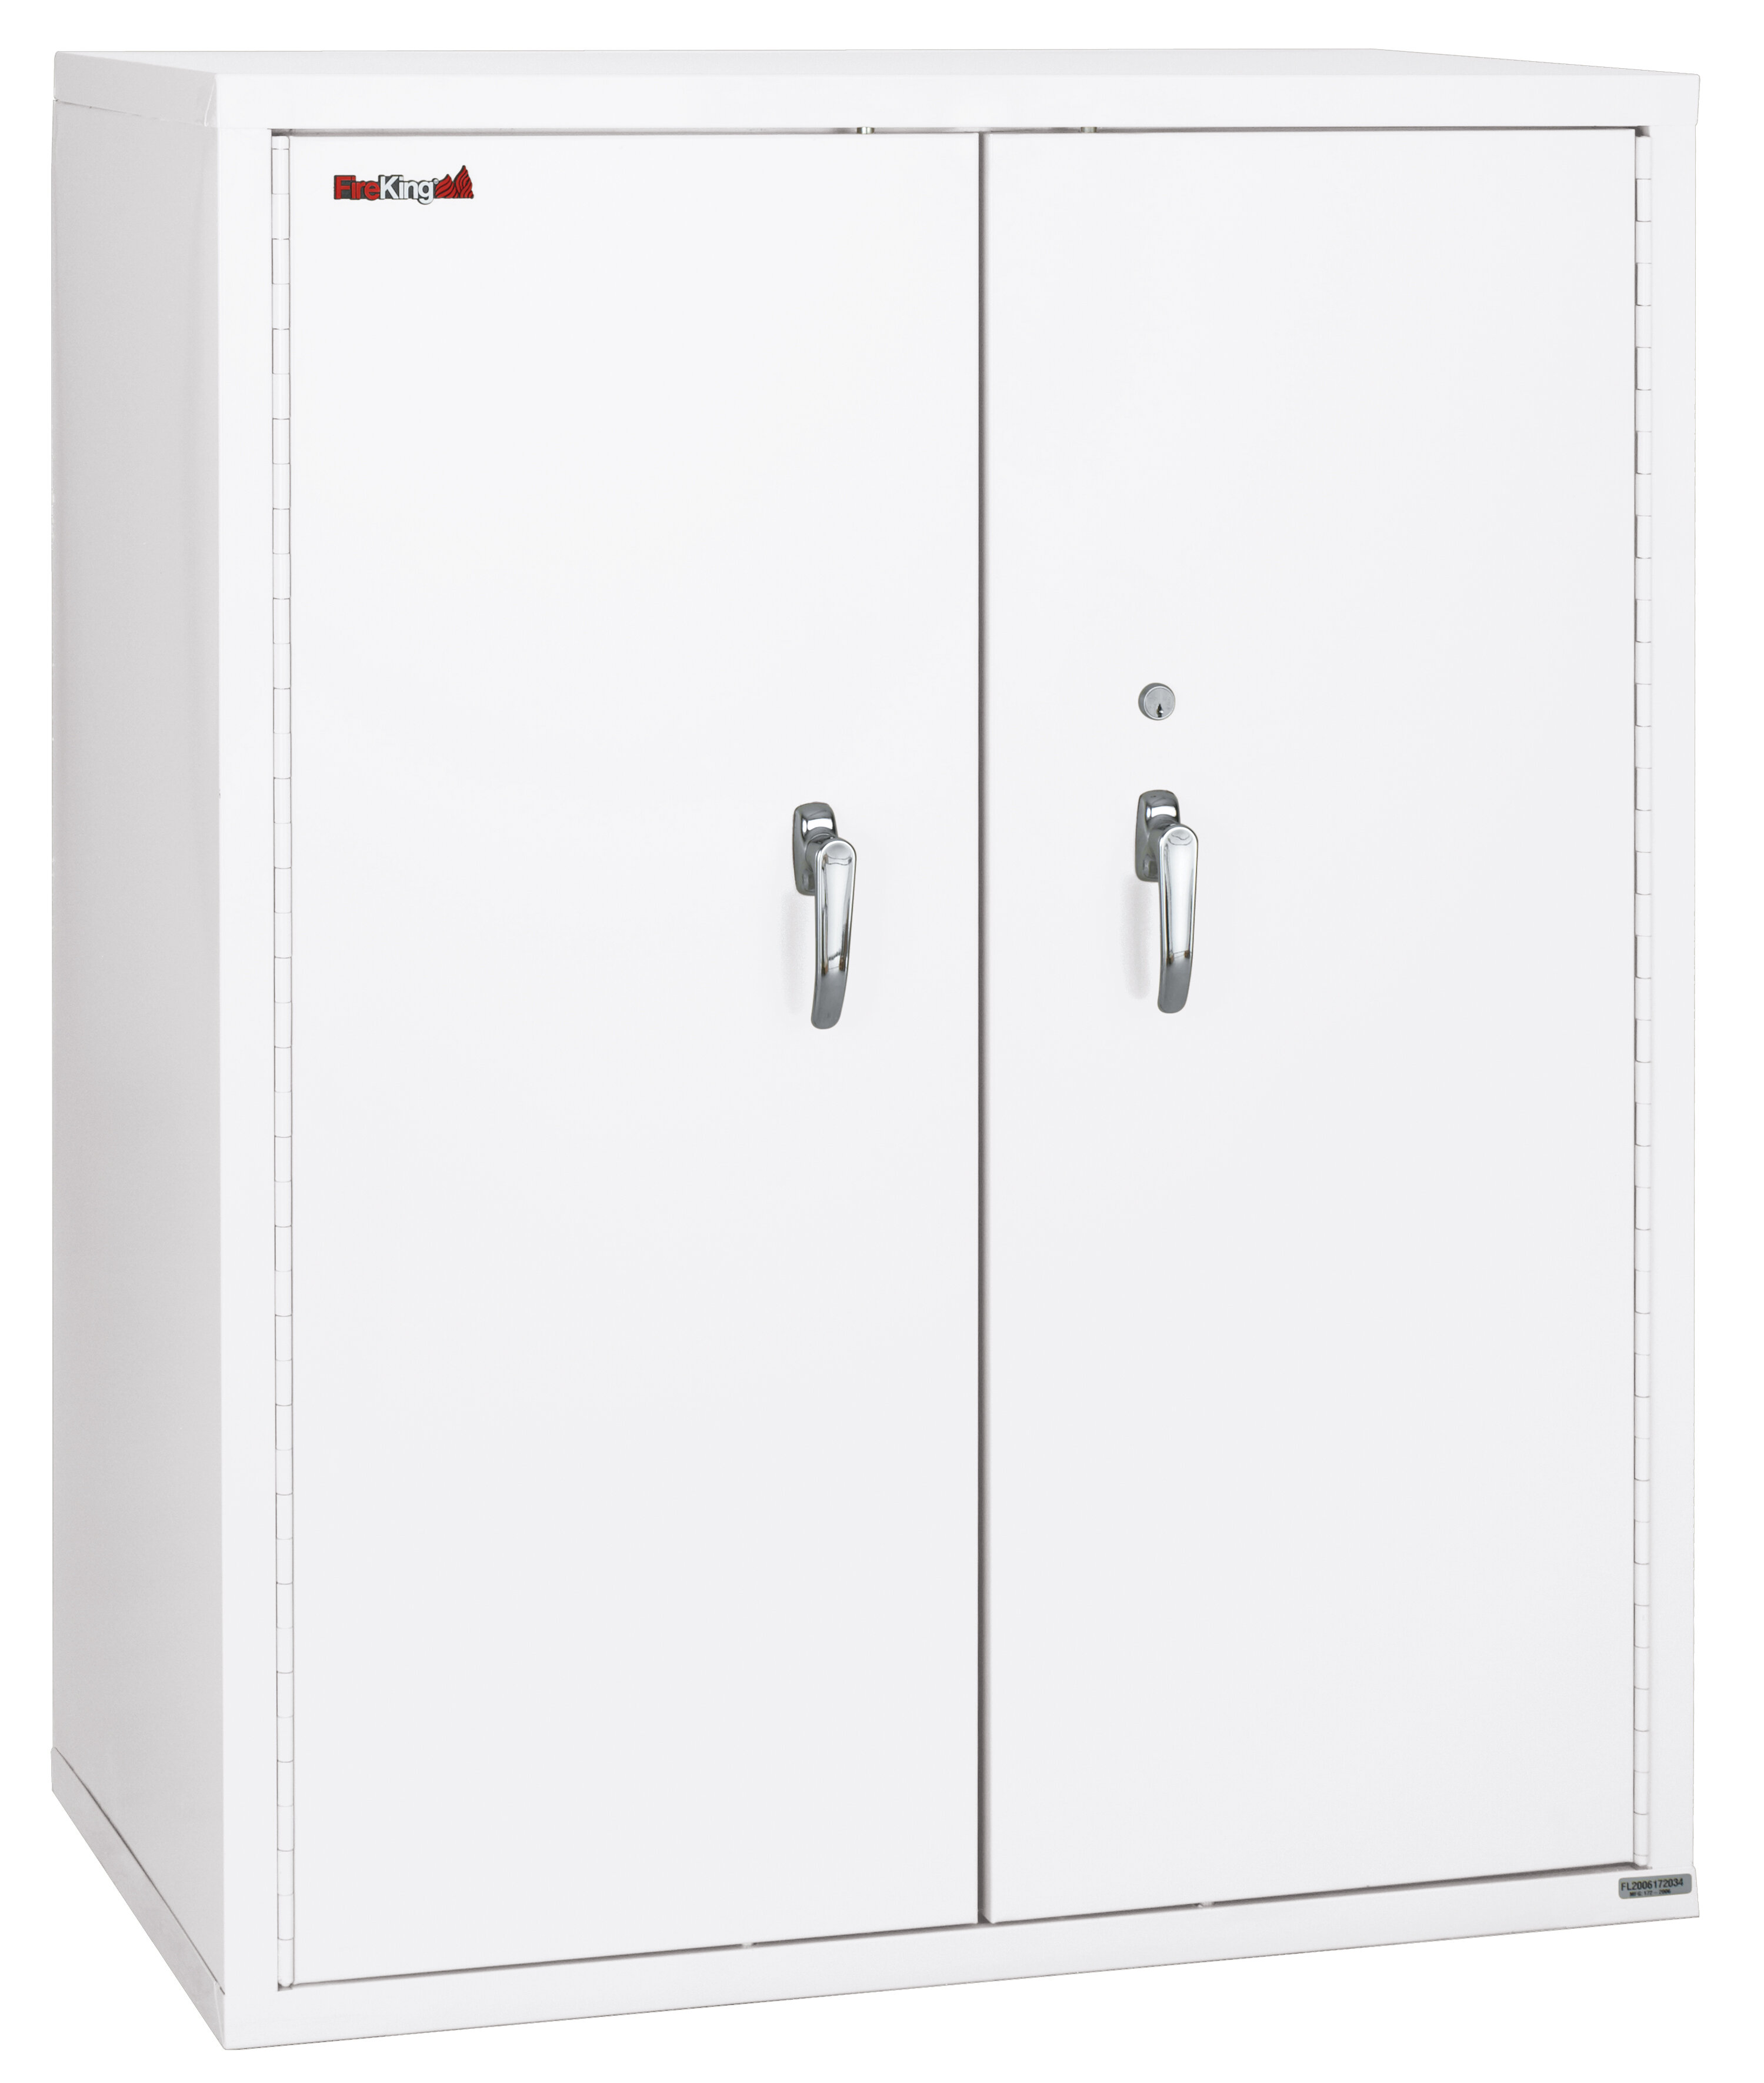 Fireking Fireproof Double Door Storage Cabinet Wayfair